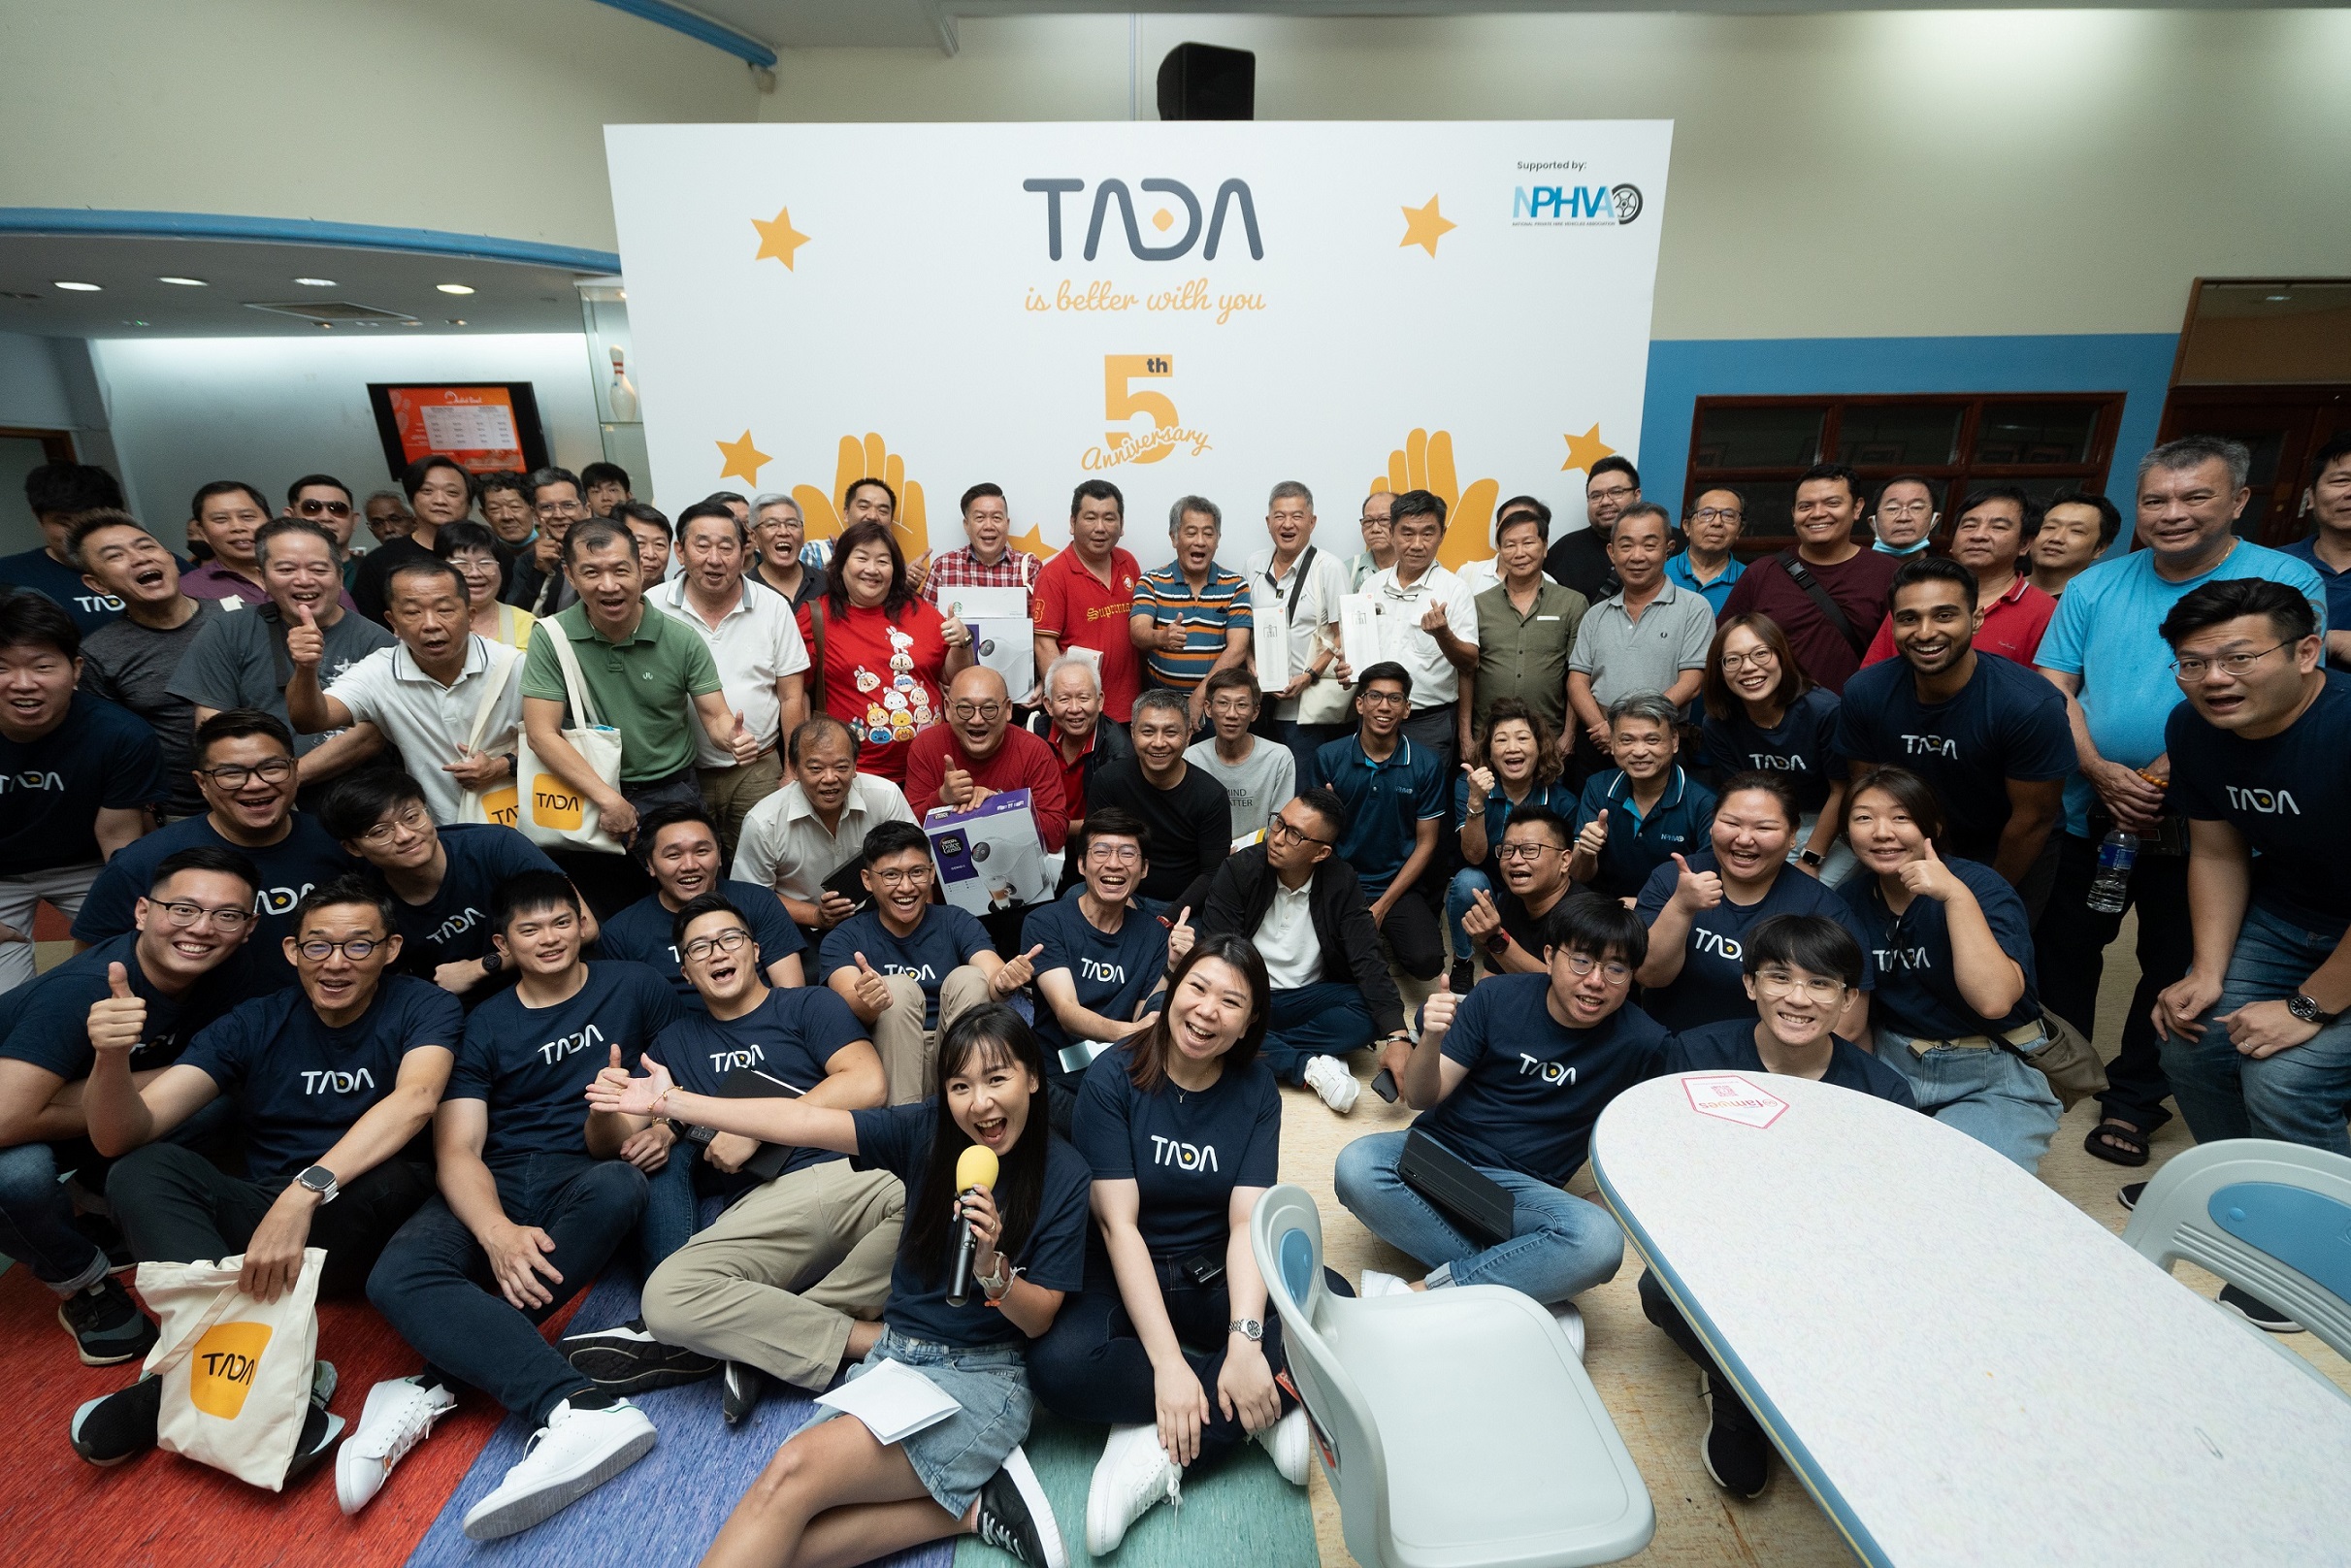 TADA เปิดบริการเรียกรถผ่านแอป แบบไม่มีค่าคอมฯในไทย เริ่มต้นให้บริการใน กทม.